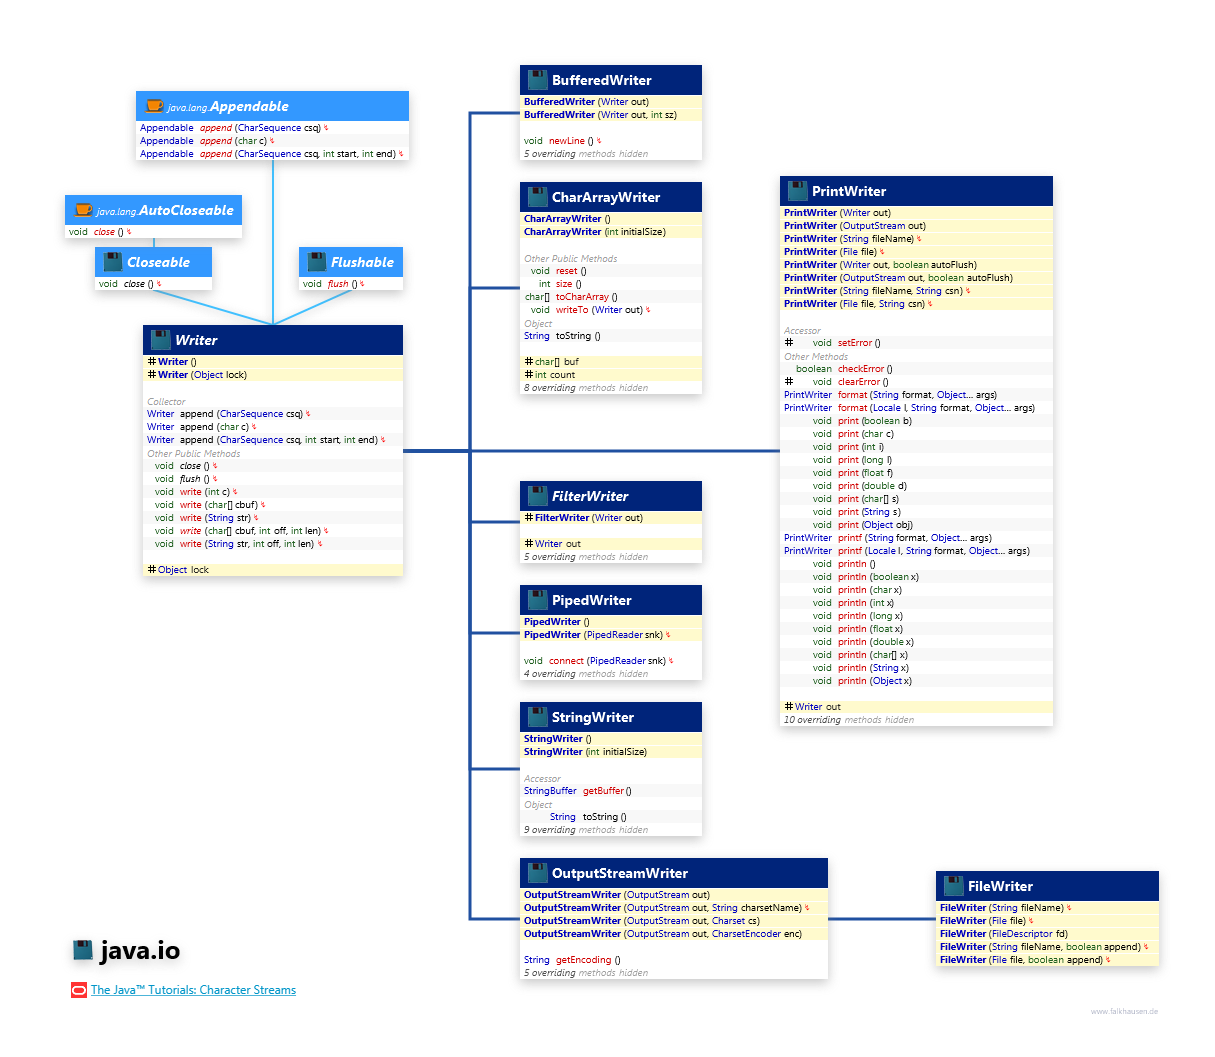 java.io Writer class diagram and api documentation for Java 8